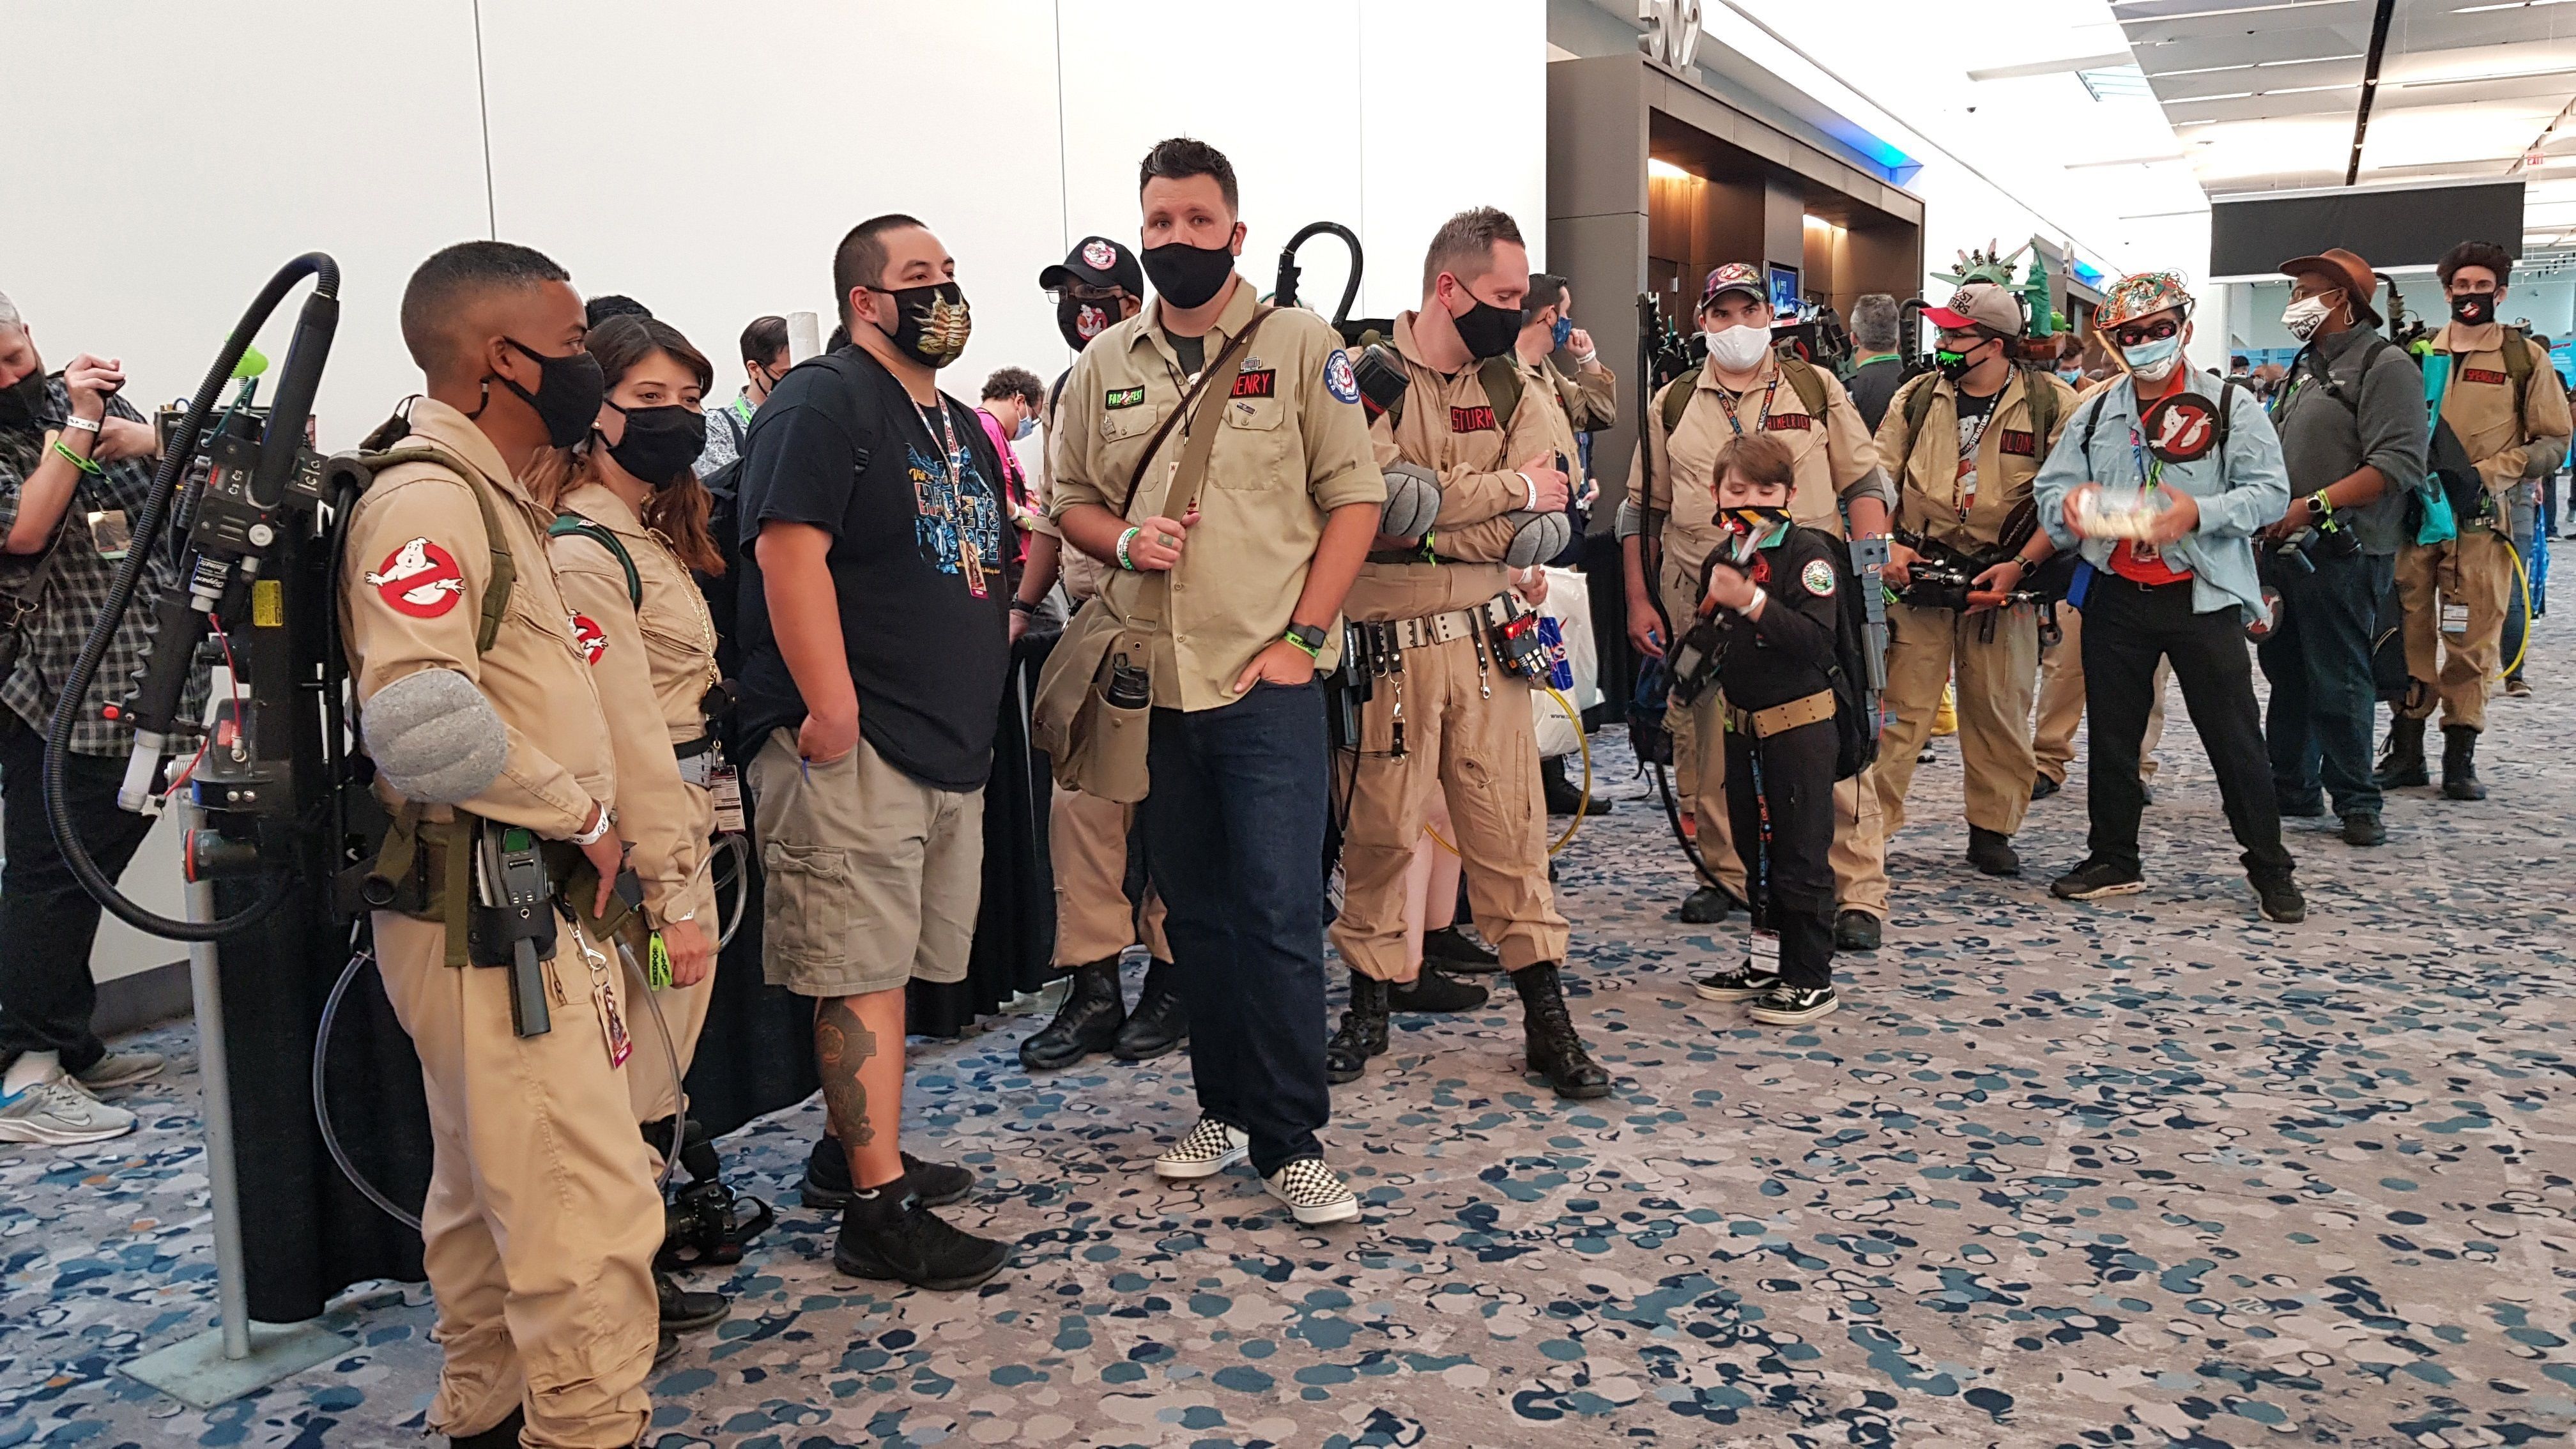 Grupos de personas disfrazadas como los protagonistas de la película "Ghostbusters" (Cazafantasmas) esperan la llegada de los actores para la proyección de la nueva cinta ayer, en el Comic-Con de Nueva York (EE.UU.). EFE/Jorge Fuentelsaz
